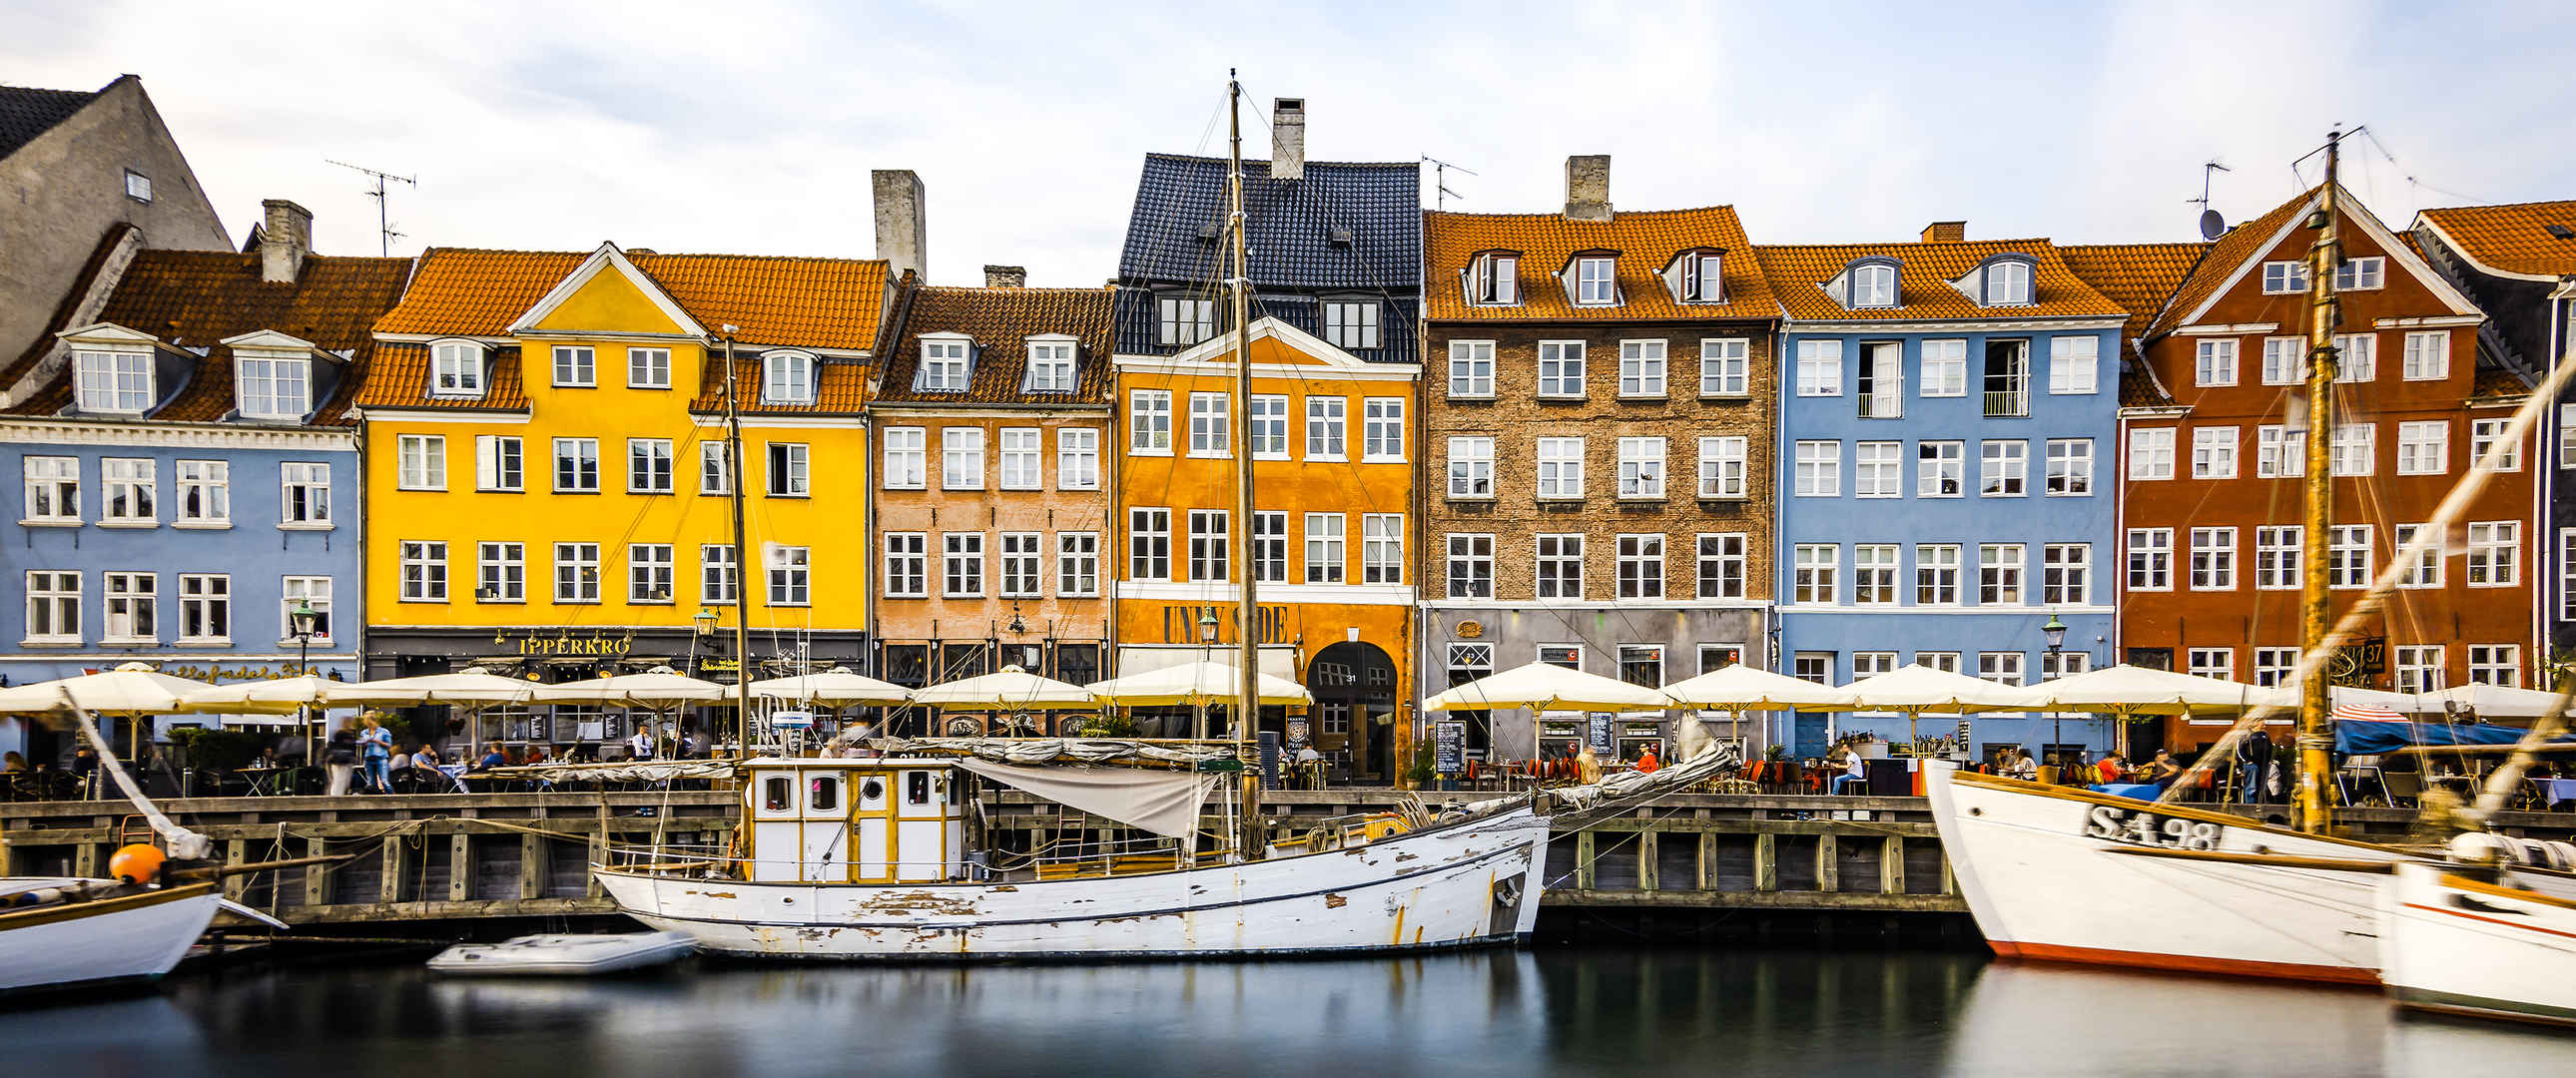 哥本哈根 新的港口3440x1440风景壁纸